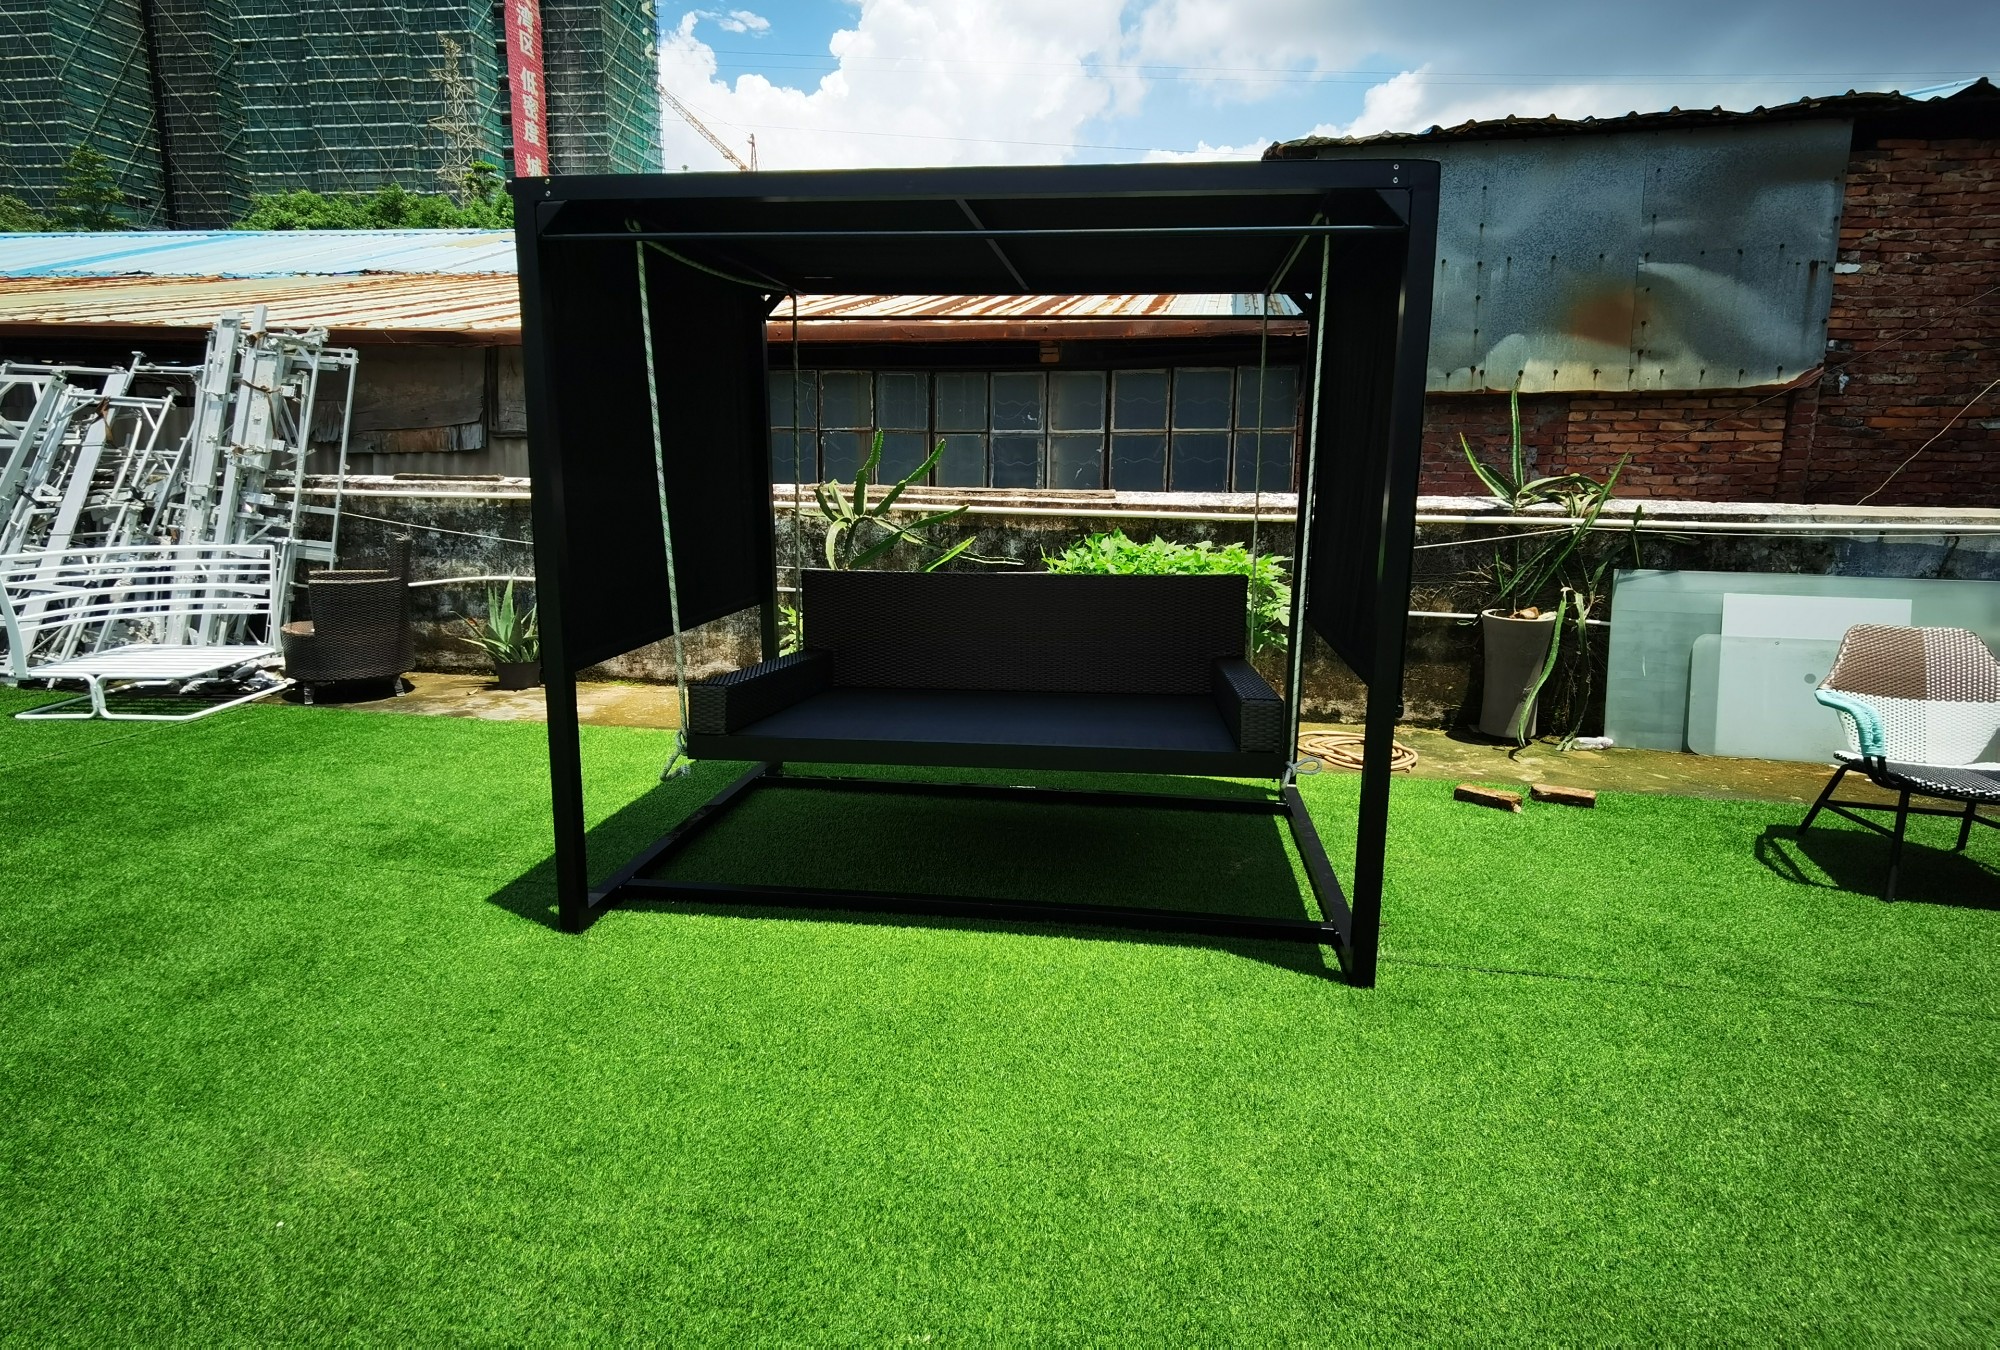 Modernes Tagesbett für Außen- und Gartenlounge